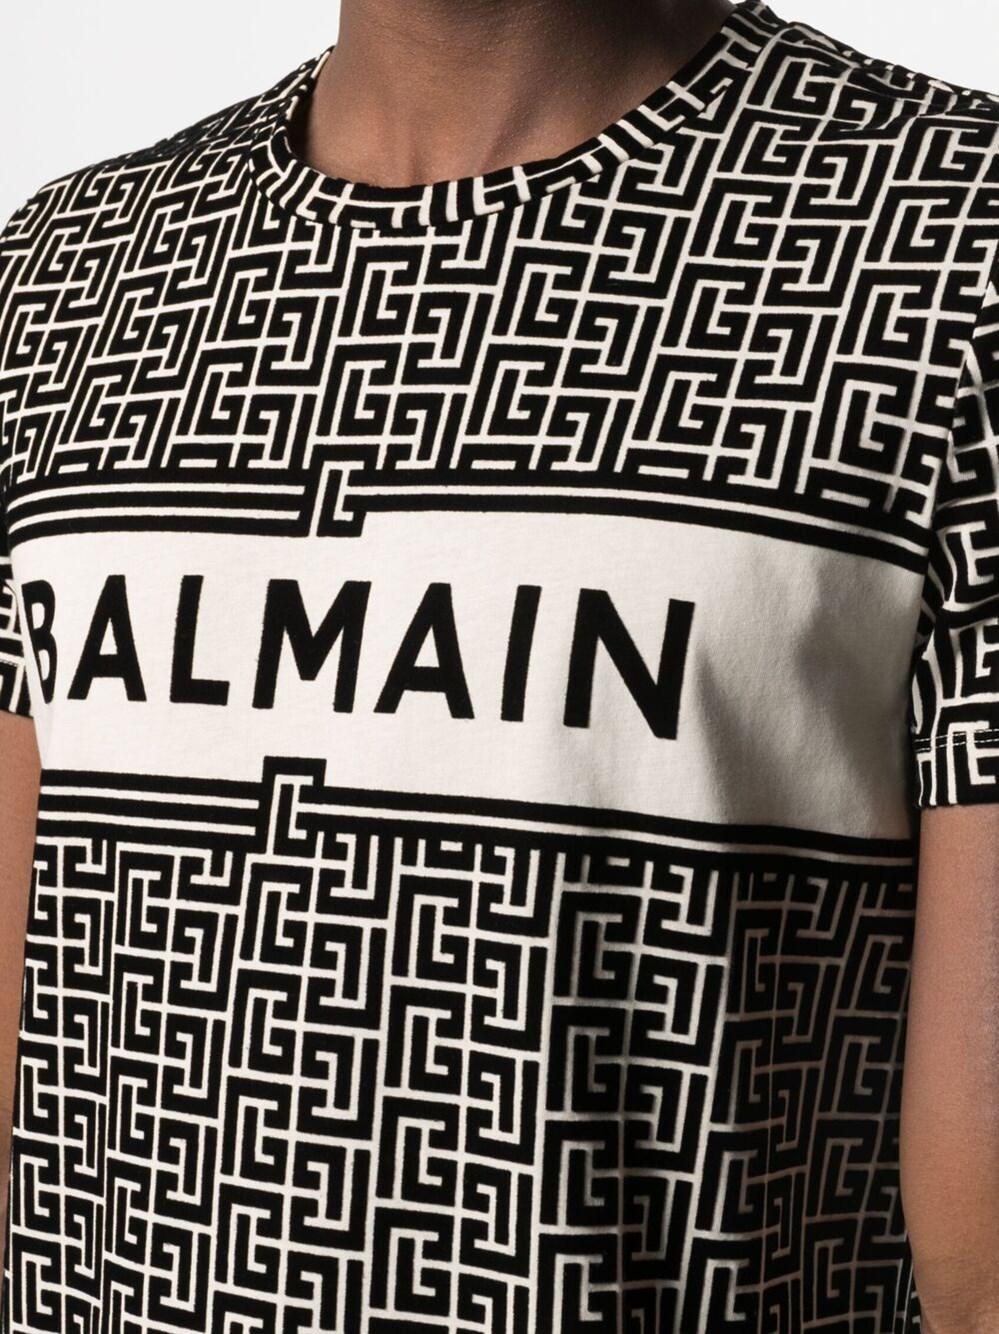 Balmain Monogram Print T-shirt for Men